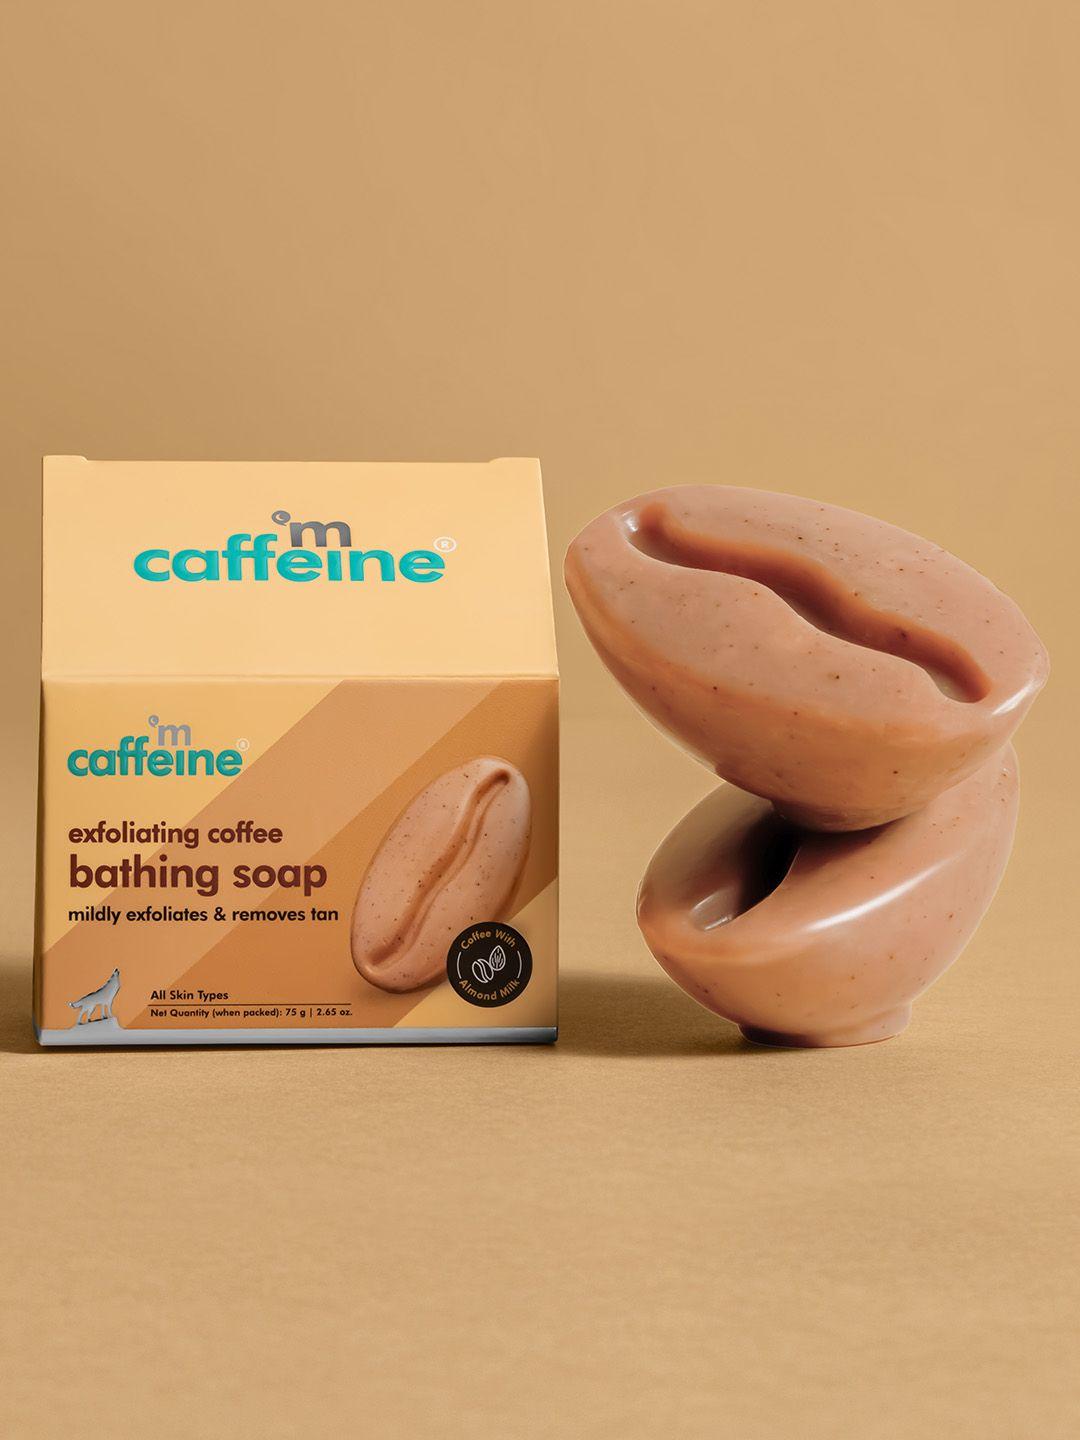 mcaffeine exfoliating coffee bathing soap duo - 75g each